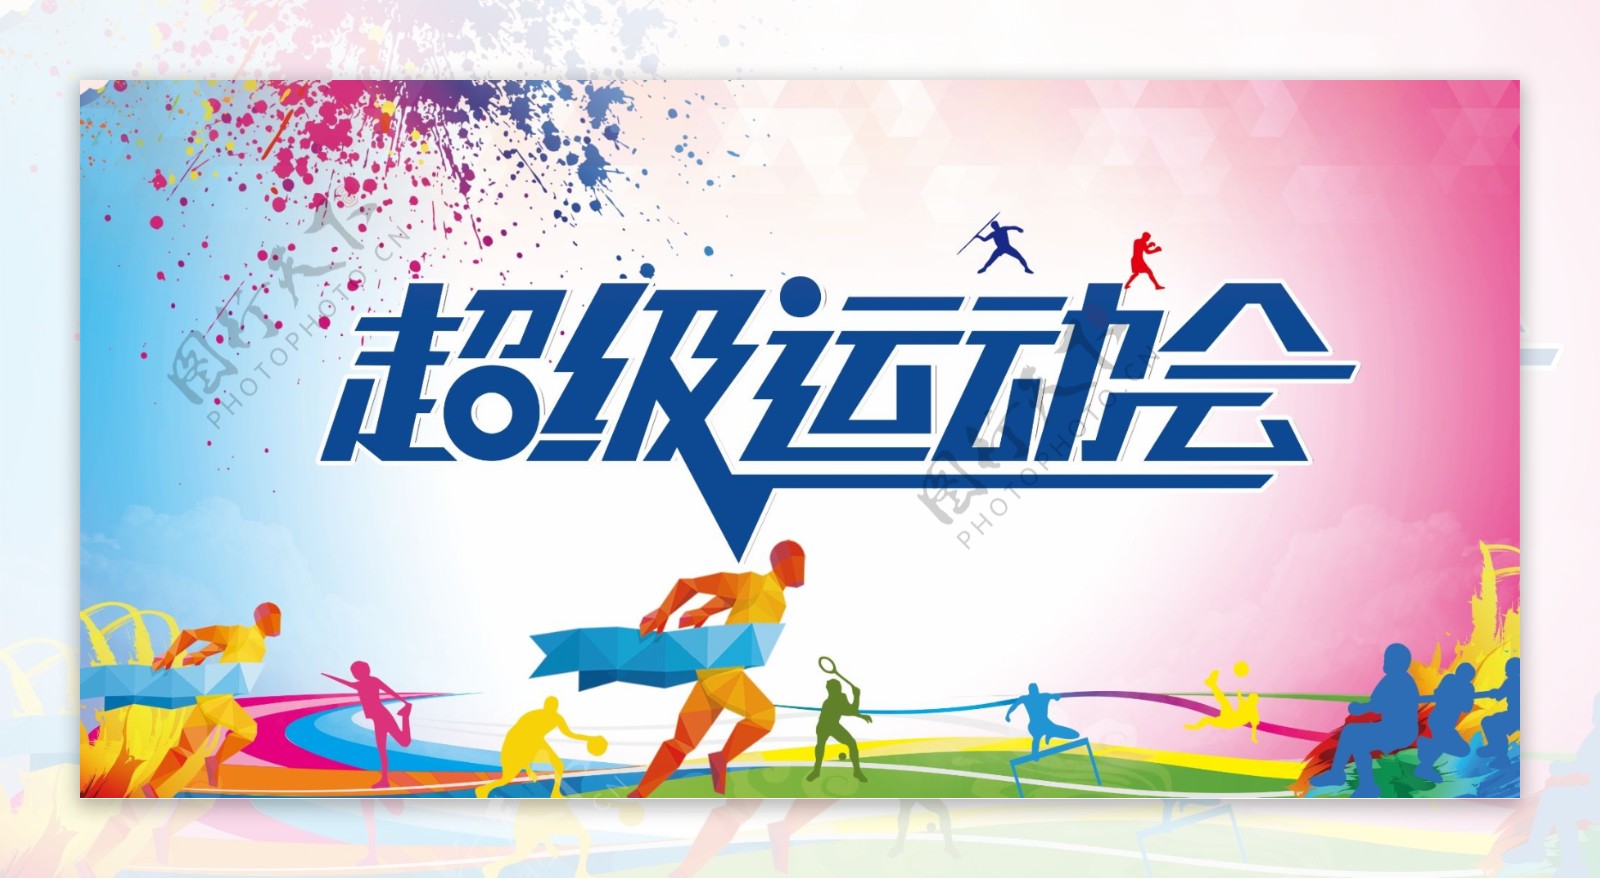 2017年炫彩校园运动会展板设计